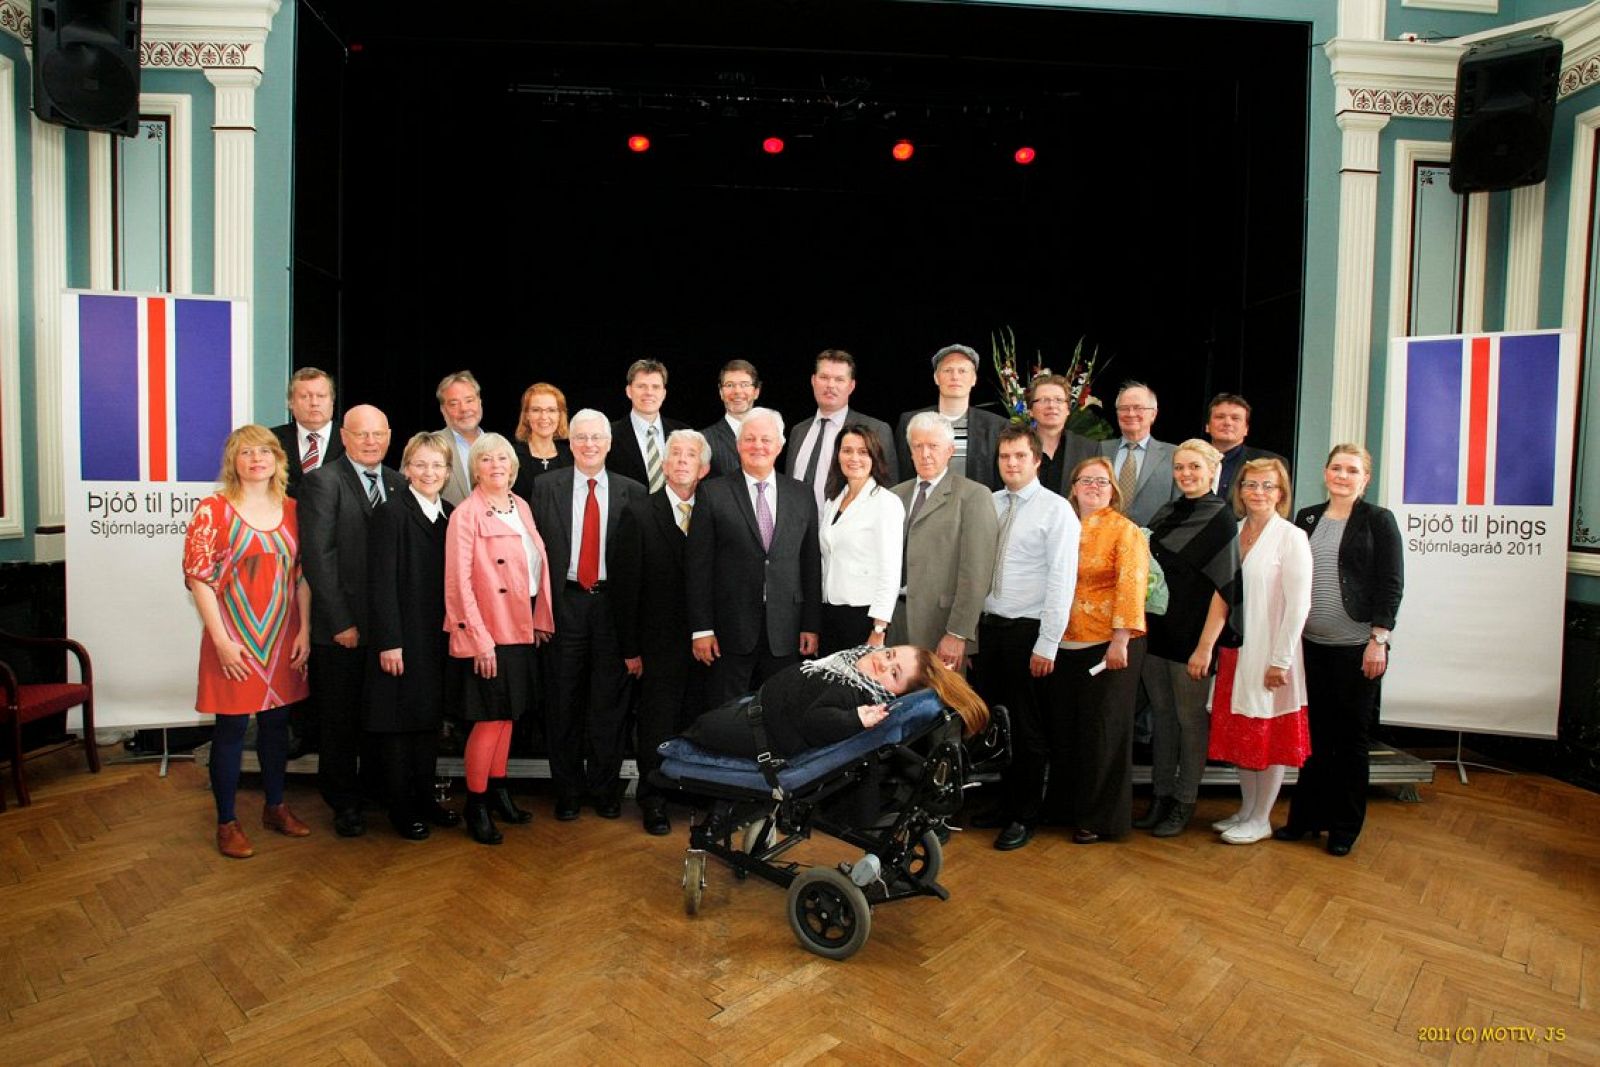 Los 25 miembros del Consejo Constitucional islandés.